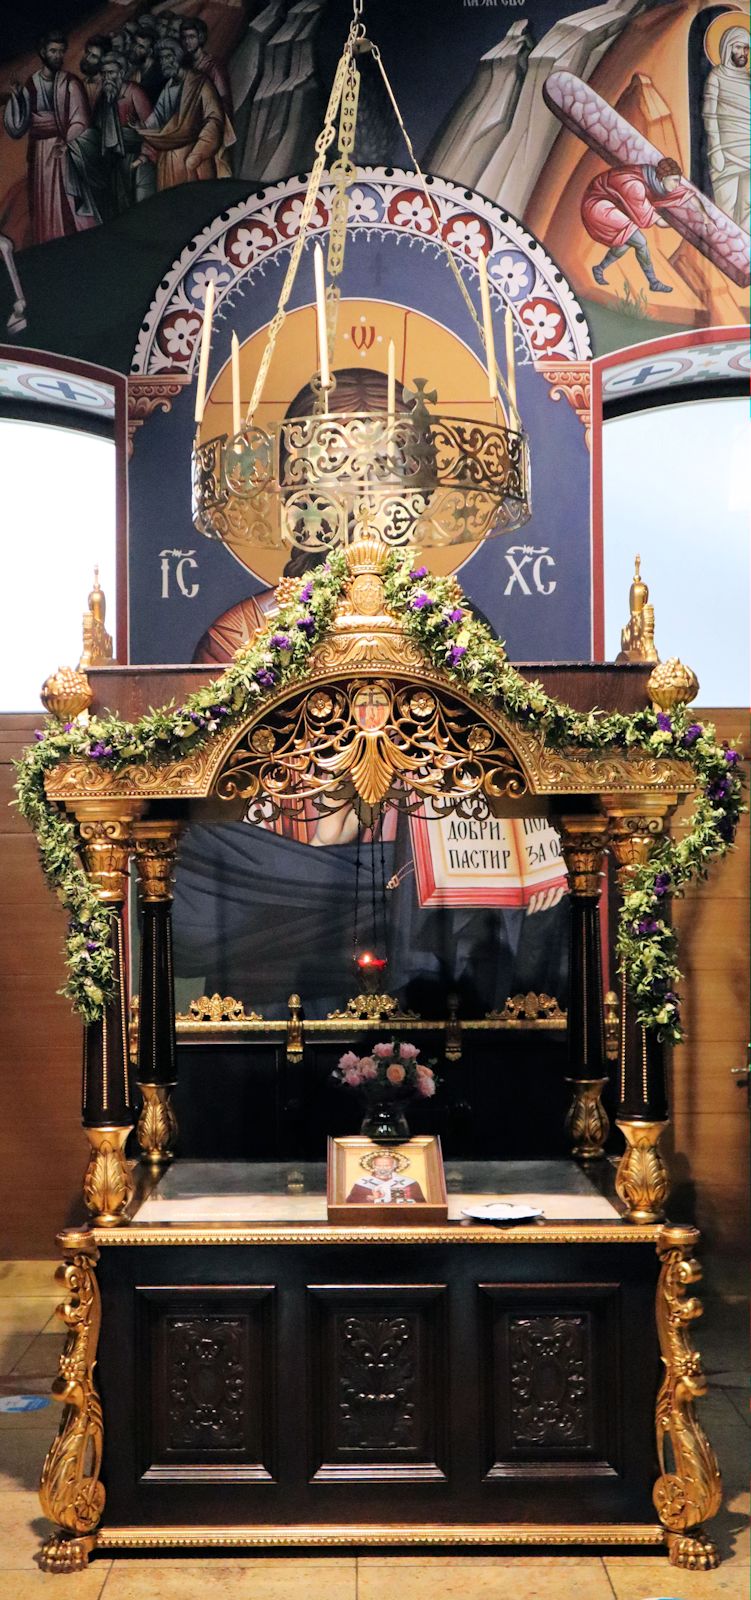 Reliquienschrein in der Serbischen Orthodoxen Kirche Zur Auferstehung Christi in Wien